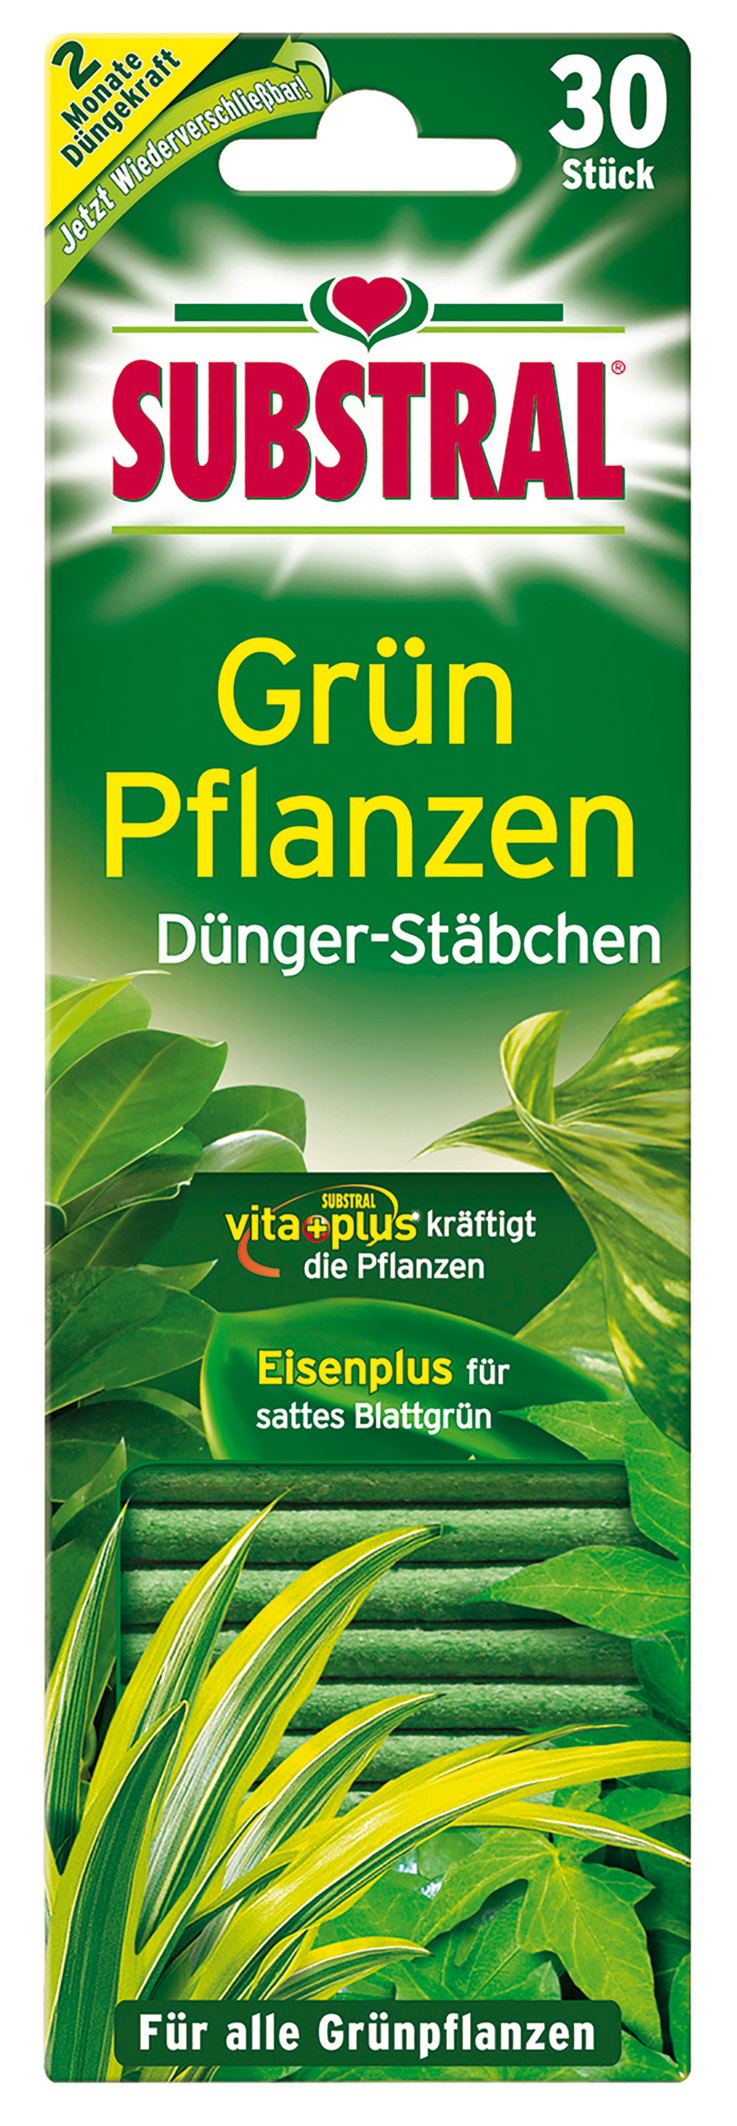 Substral Grünpflanzen Dünger-Stäbchen 30 Stück